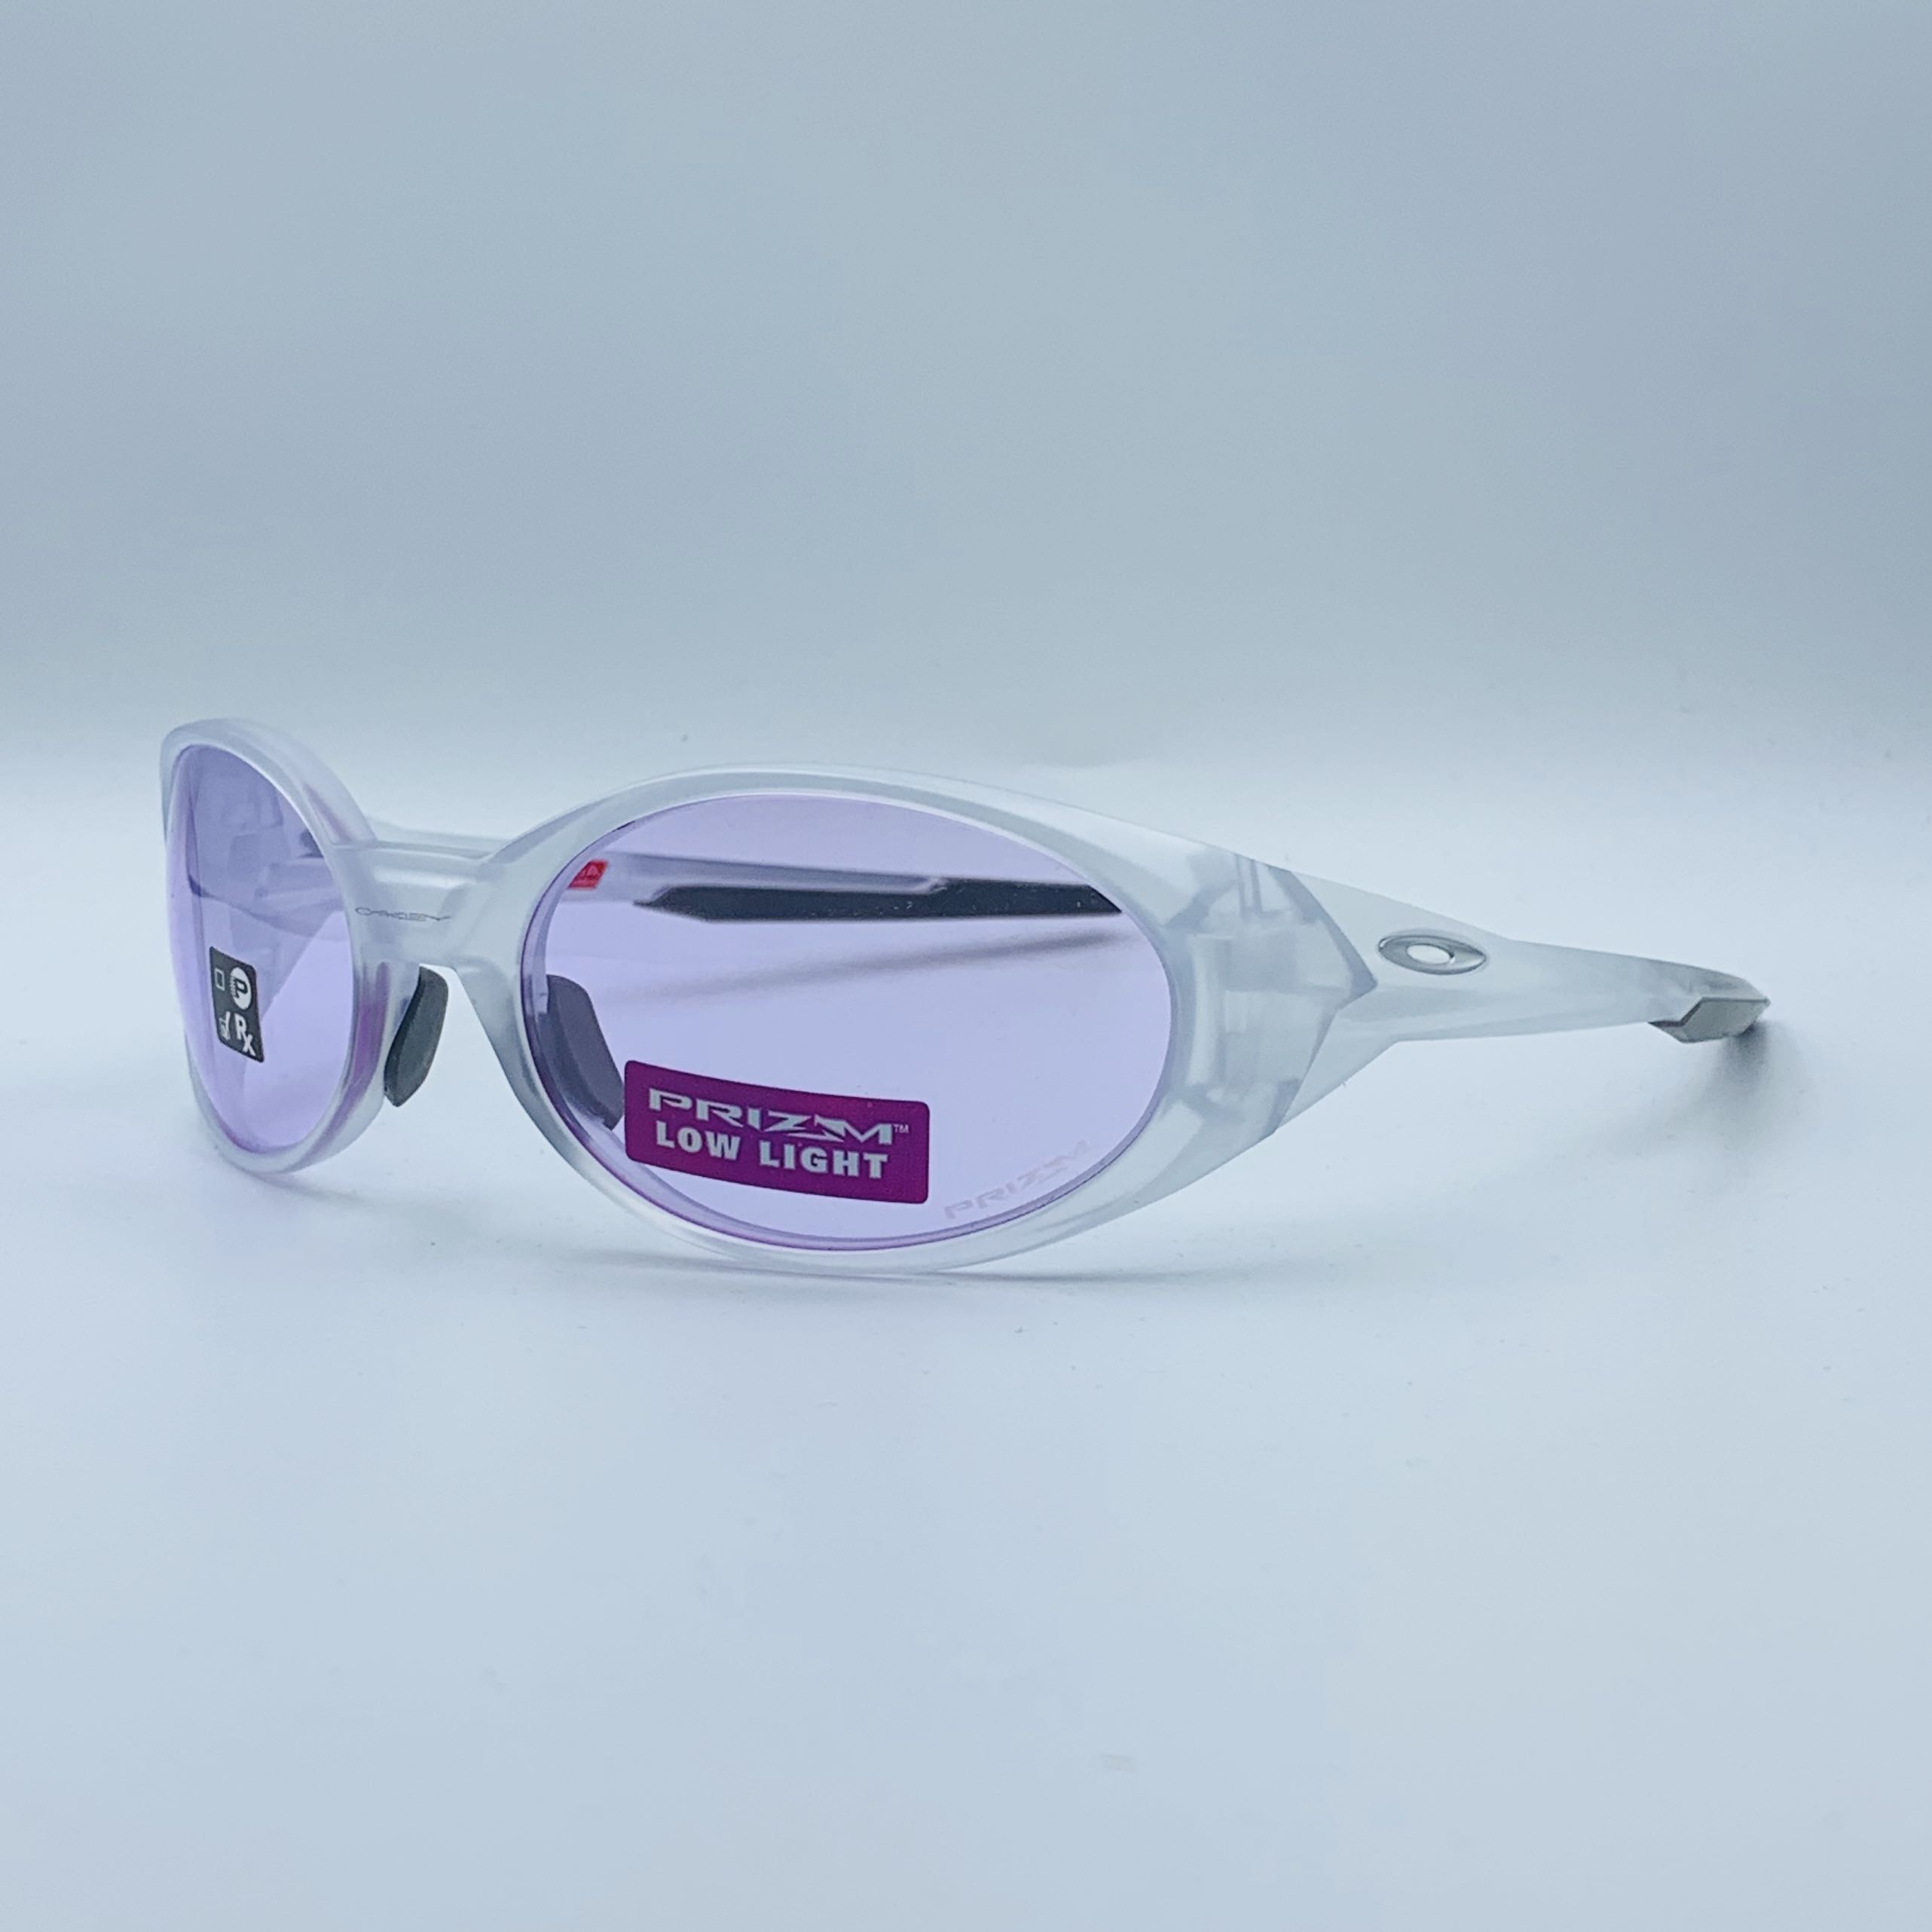 Oakley Eye Jacket Redux Prizm Low Light Matte Clear Men S Fashion Accessories Eyewear Sunglasses On Carousell